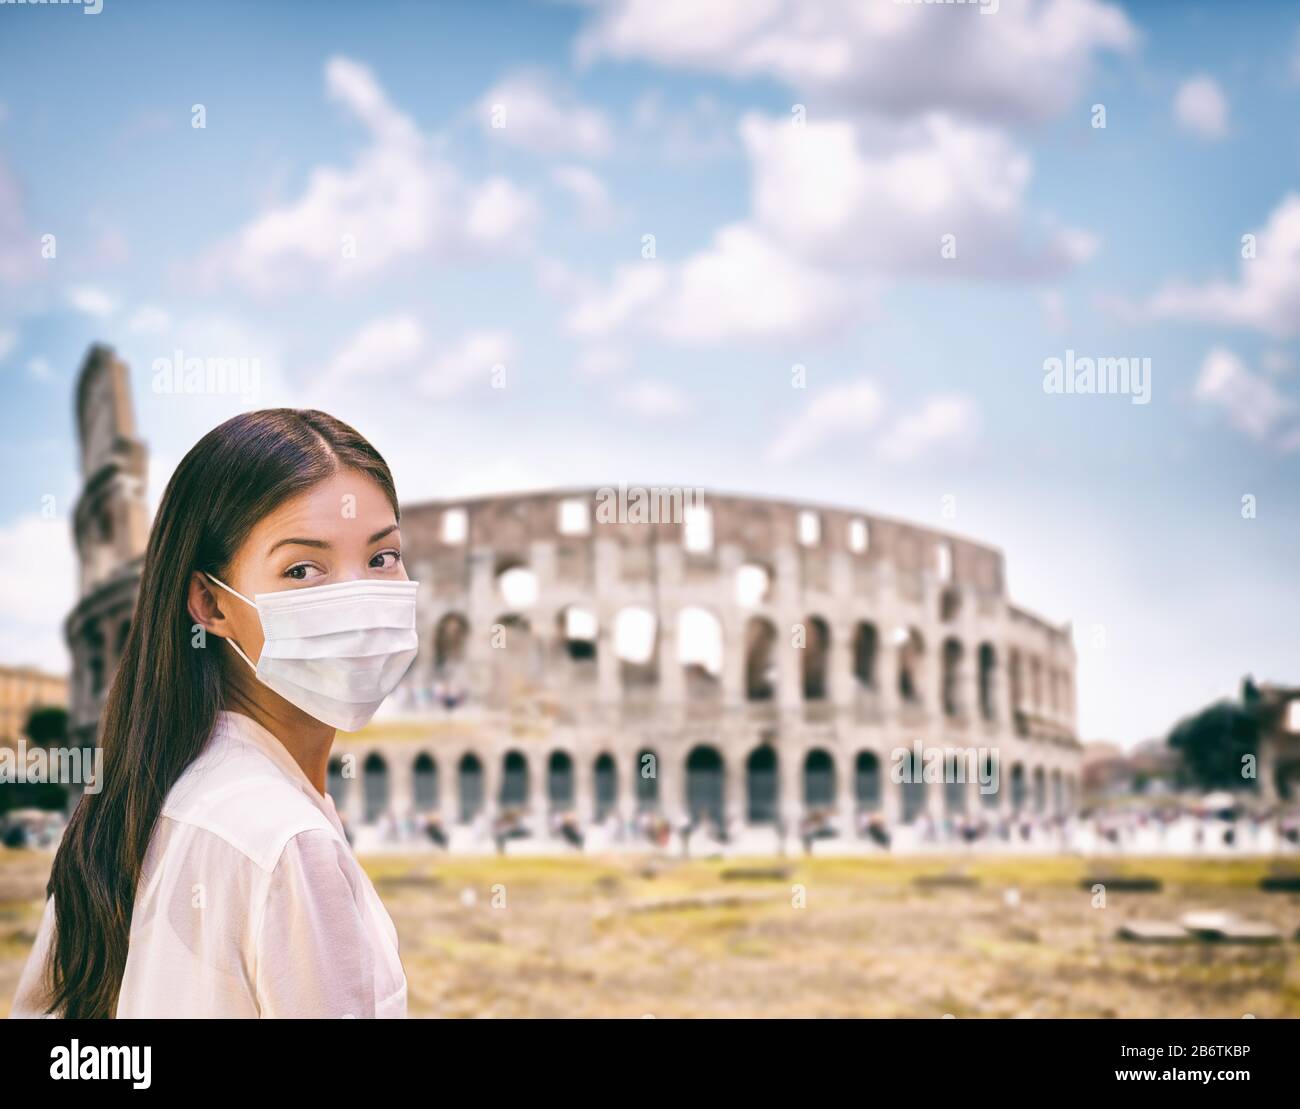 Virus Corona Italie voyage une femme chinoise asiatique portant un masque facial chirurgical protection contre le coronavirus au colisée site touristique de Roma, Italie. Quarantaine de touristes malades d'avion vers des destinations italiennes. Banque D'Images